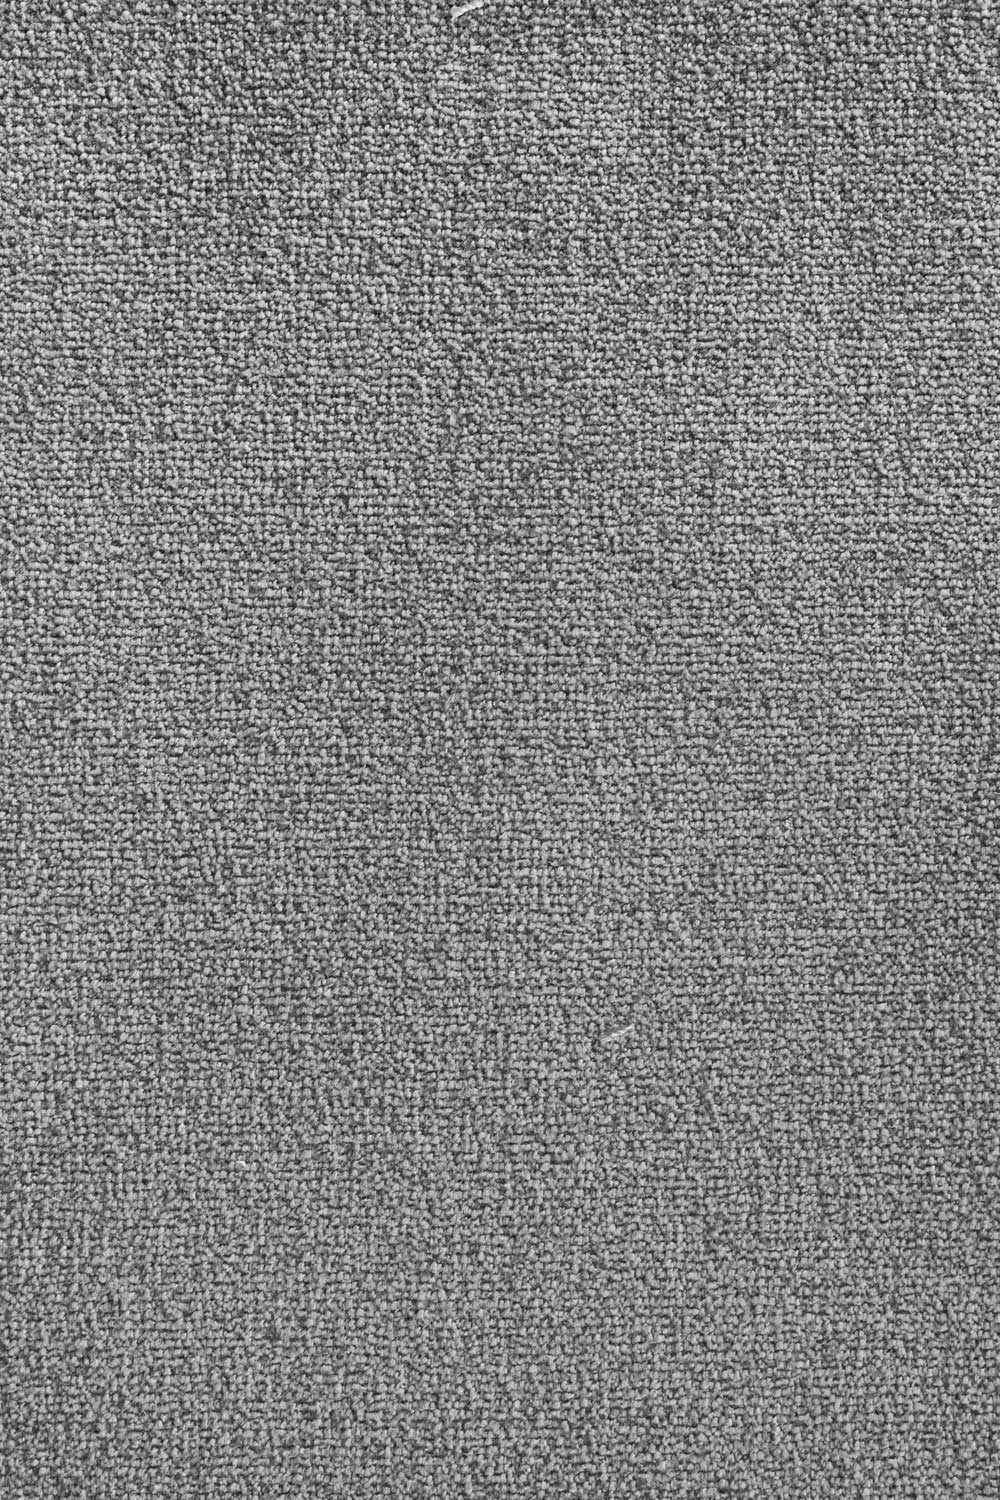 Metrážny koberec GODIVA 108 400 cm